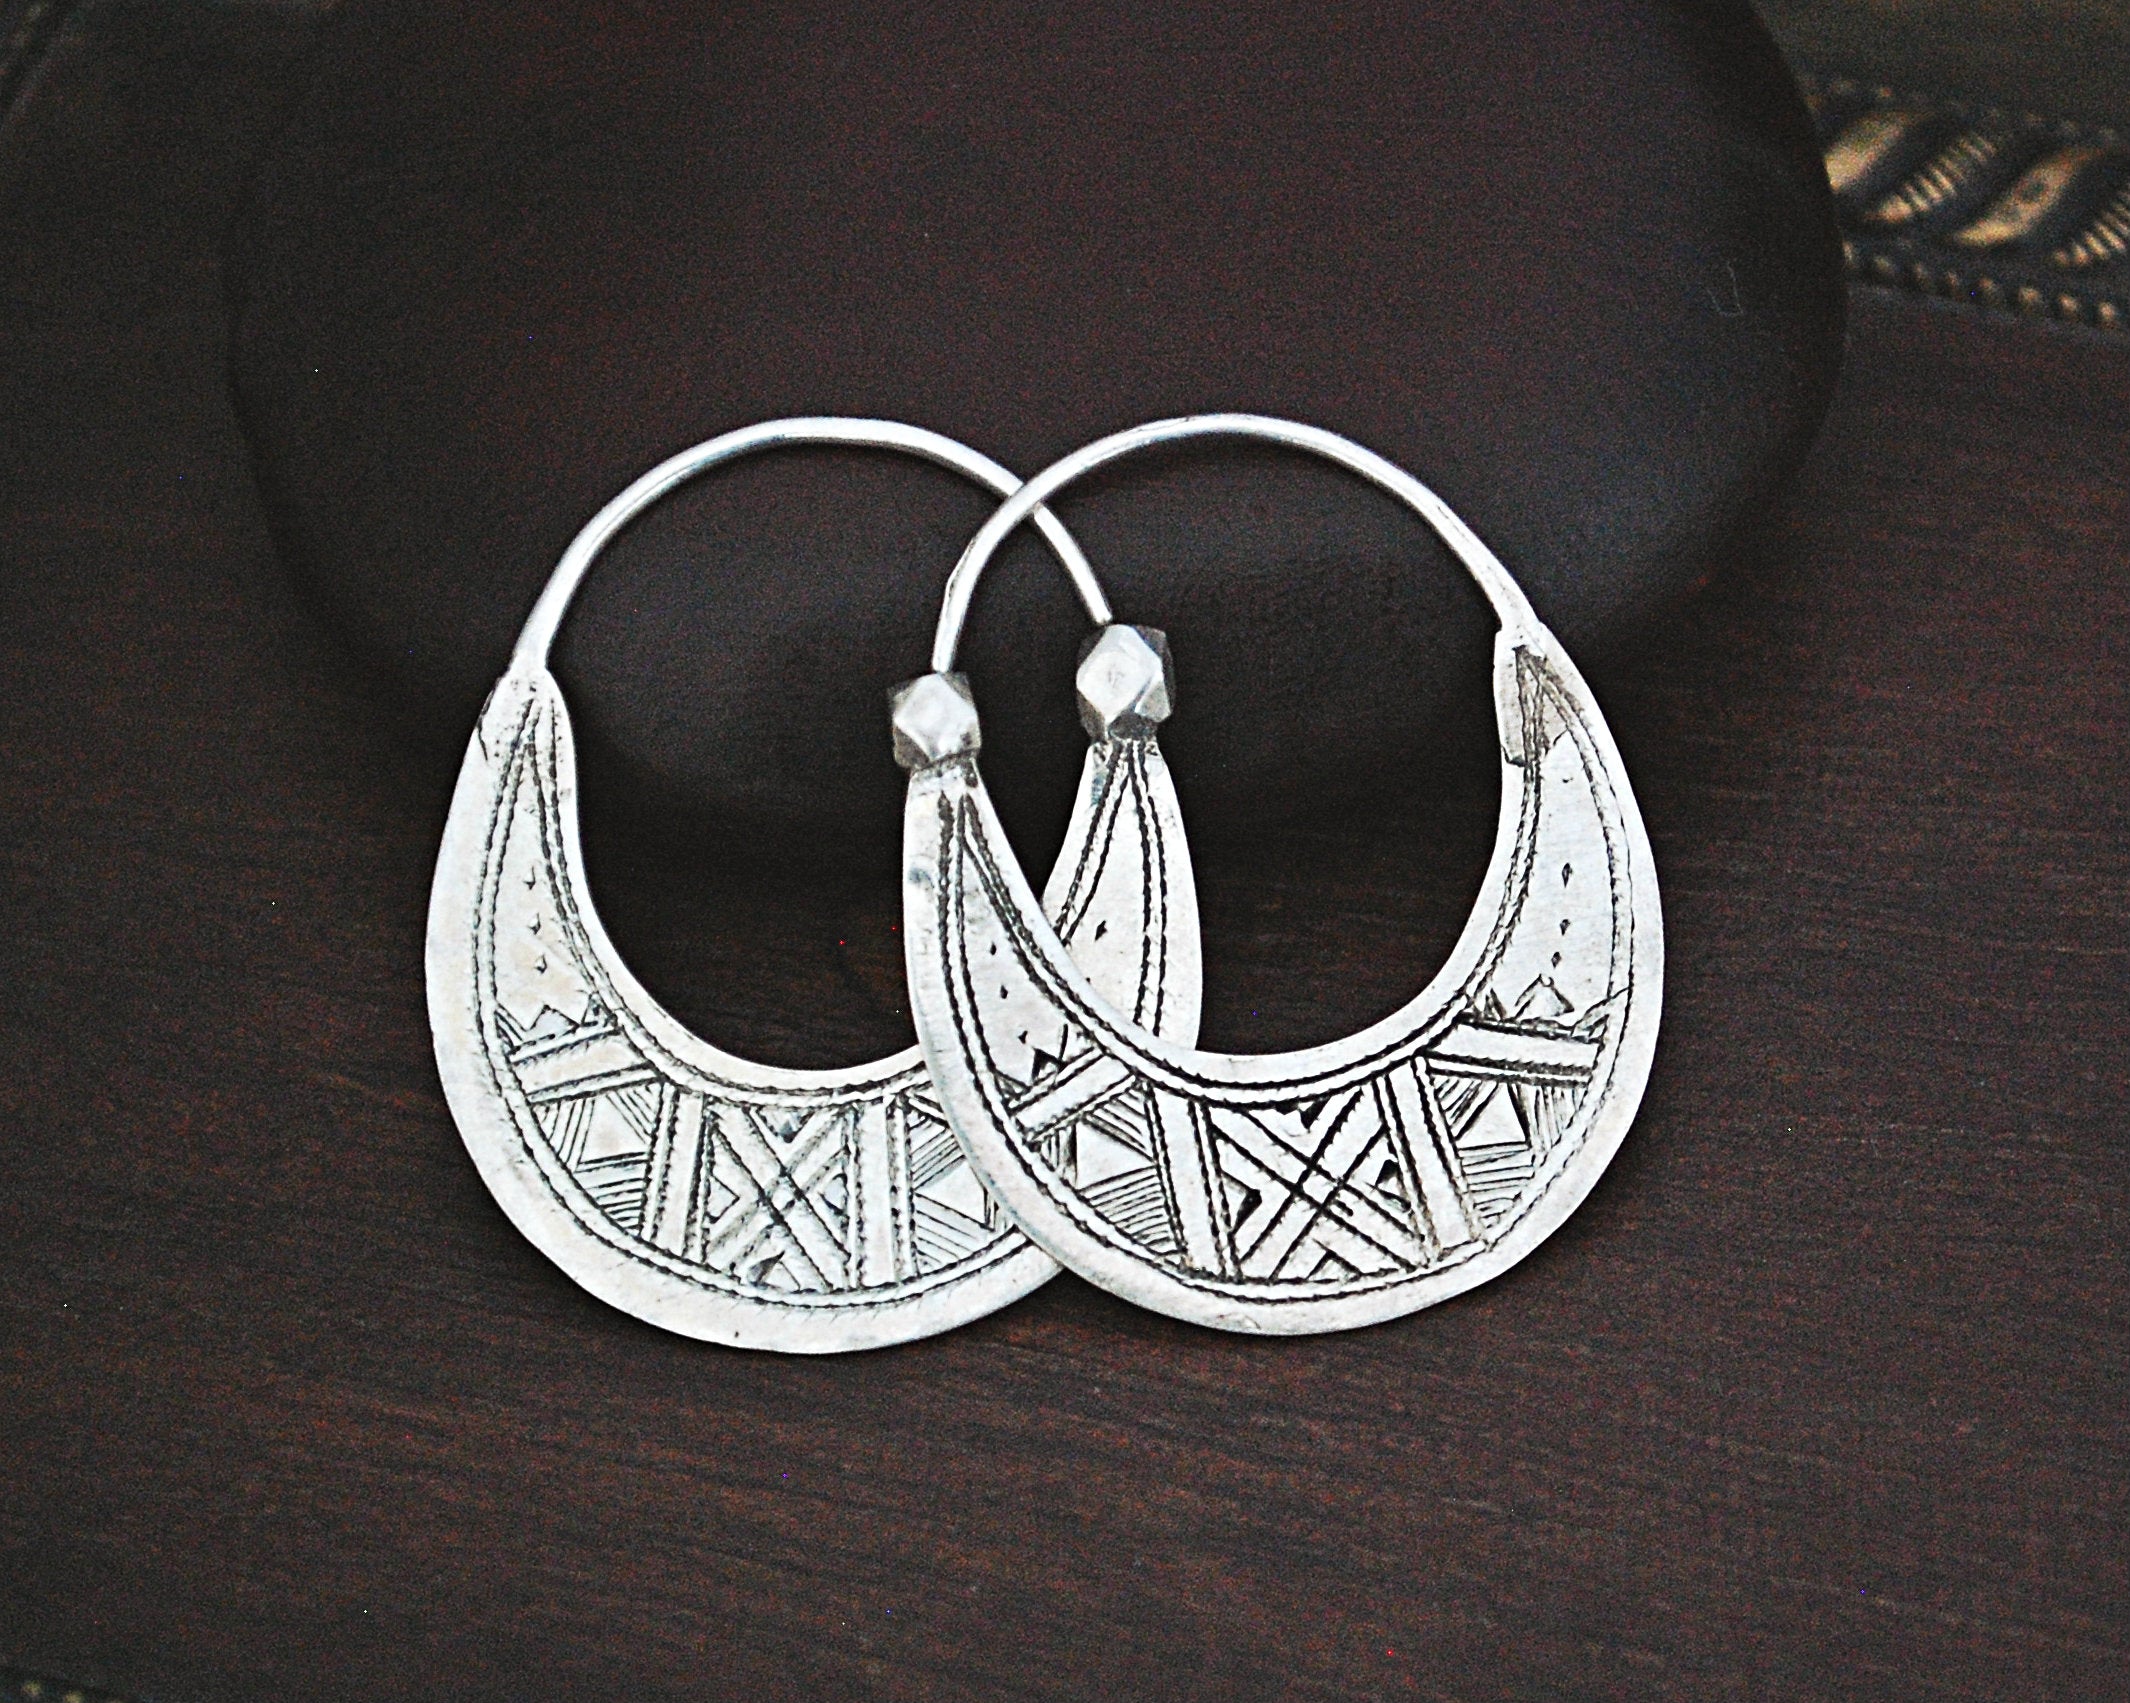 Tuareg Hoop Earrings with Carvings